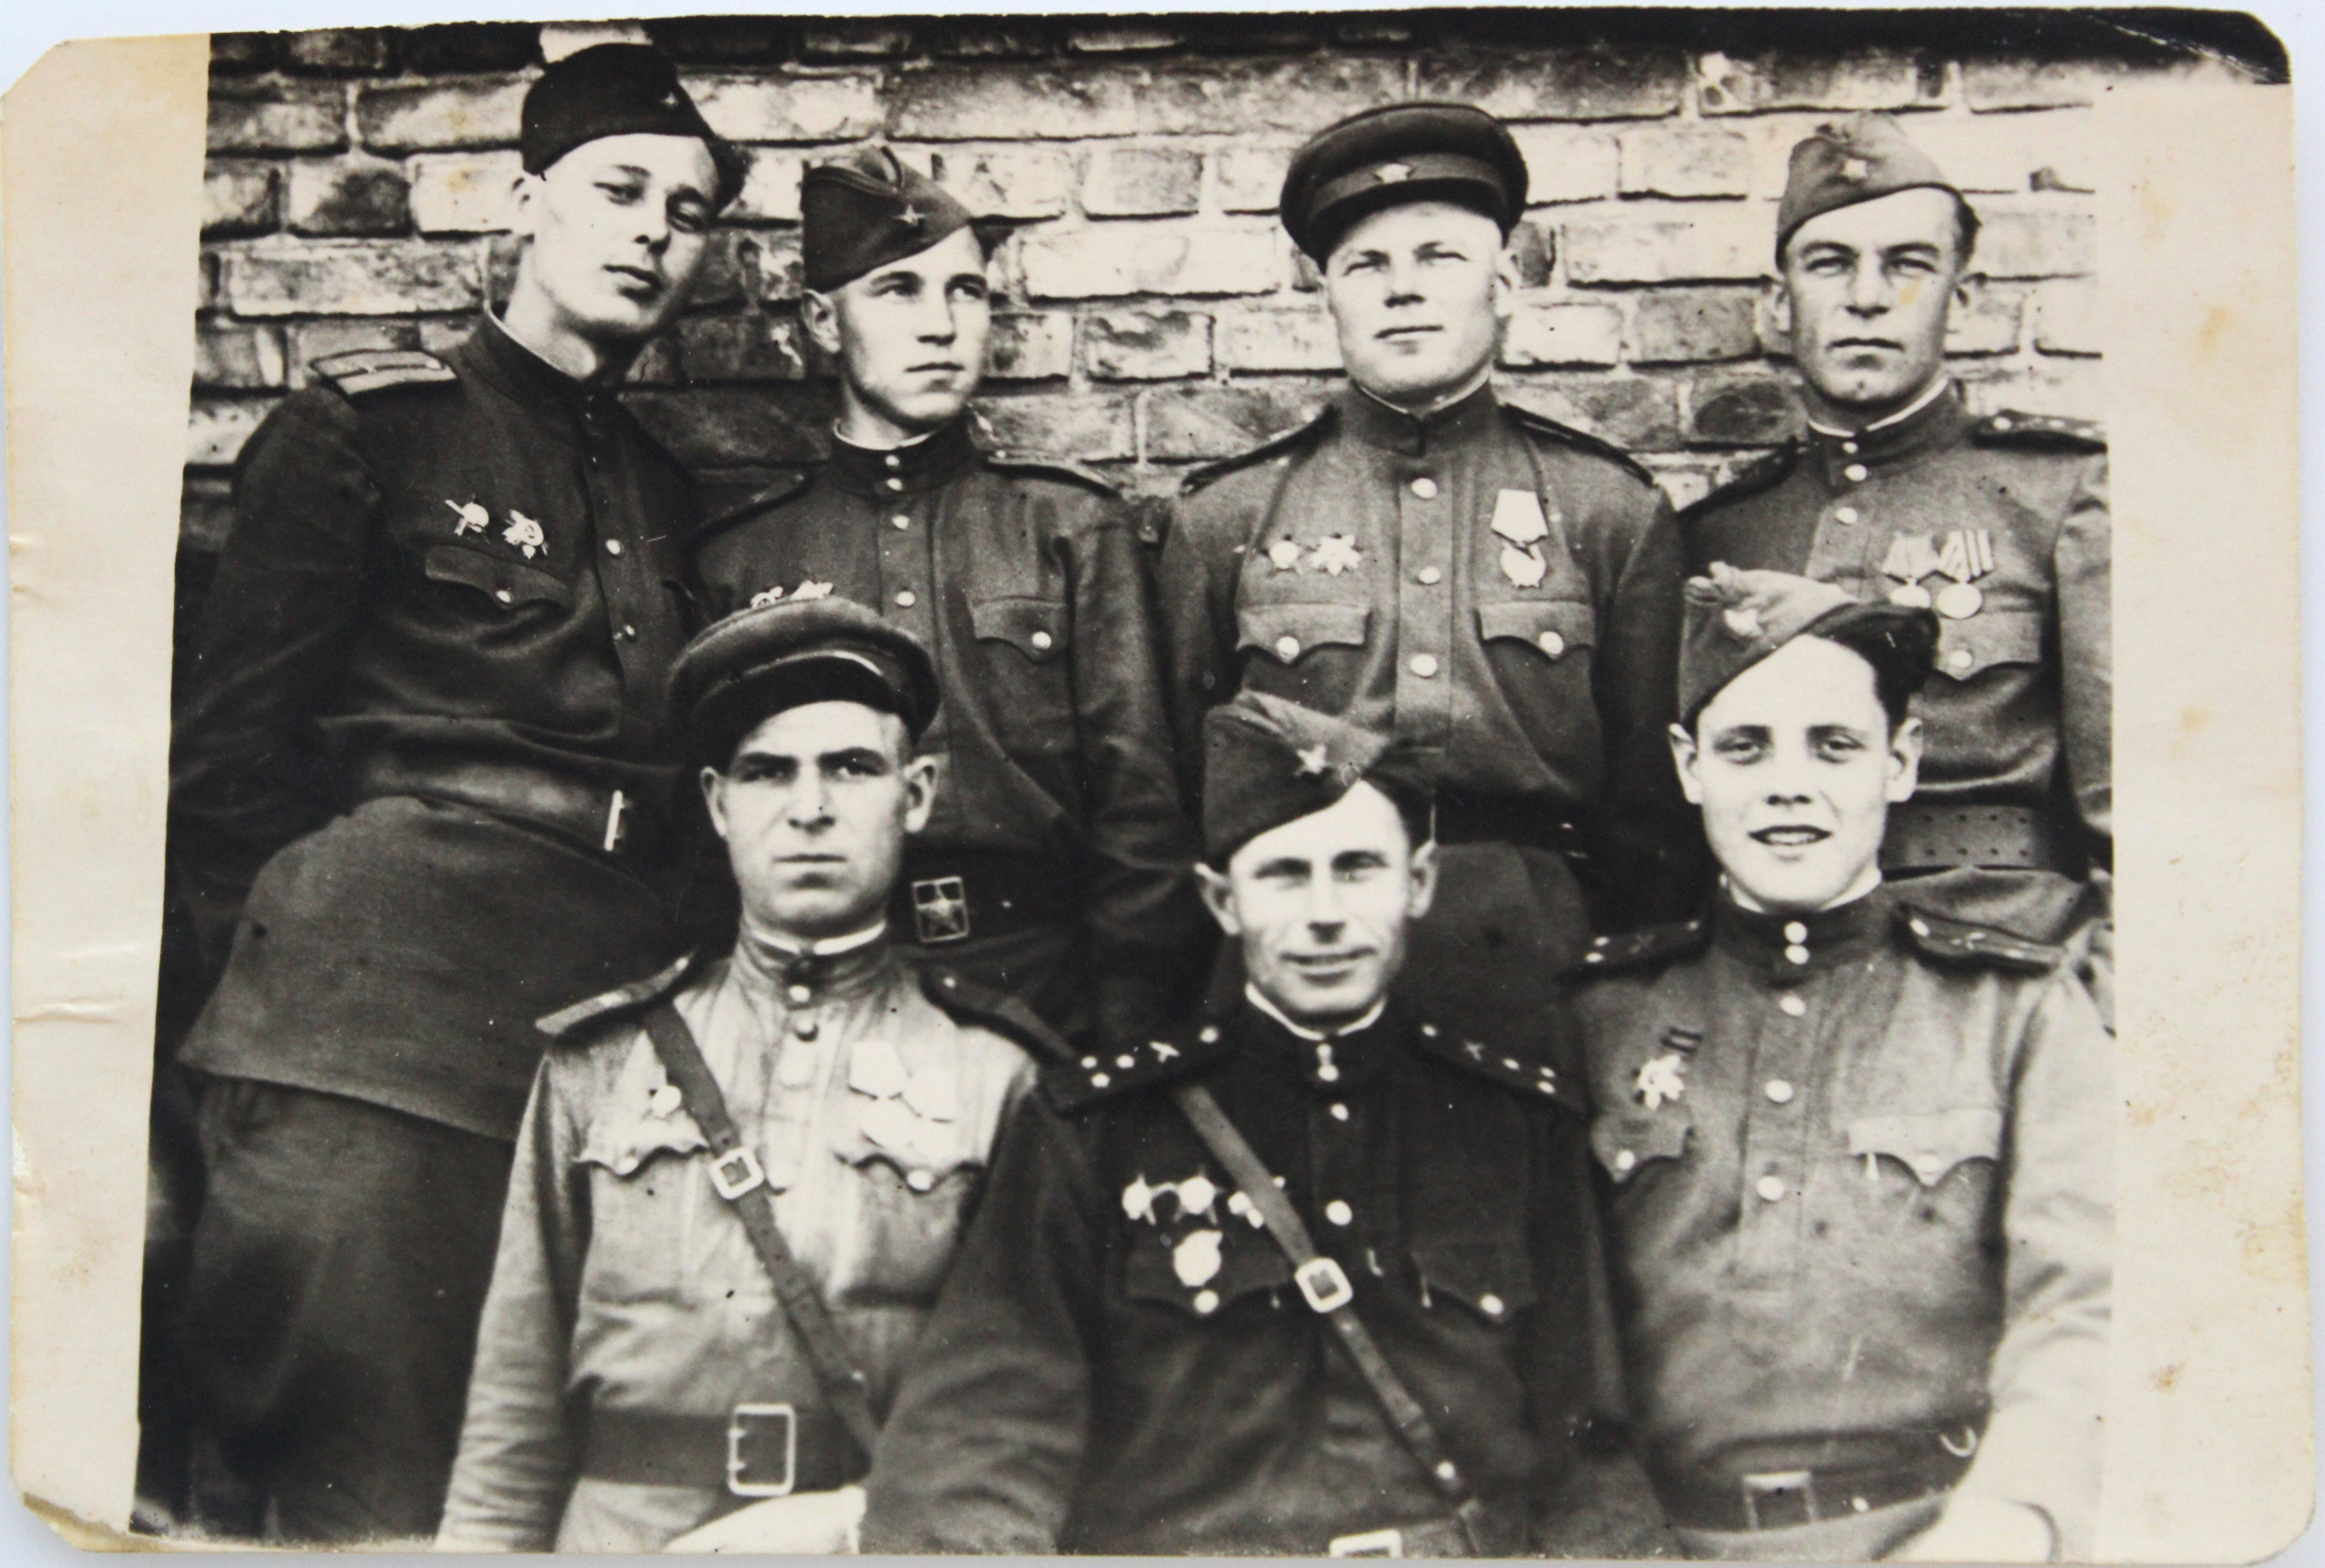 Групове фото військових, Німеччина, 1945 р. (Національний заповідник "Хортиця" CC BY-NC-SA)